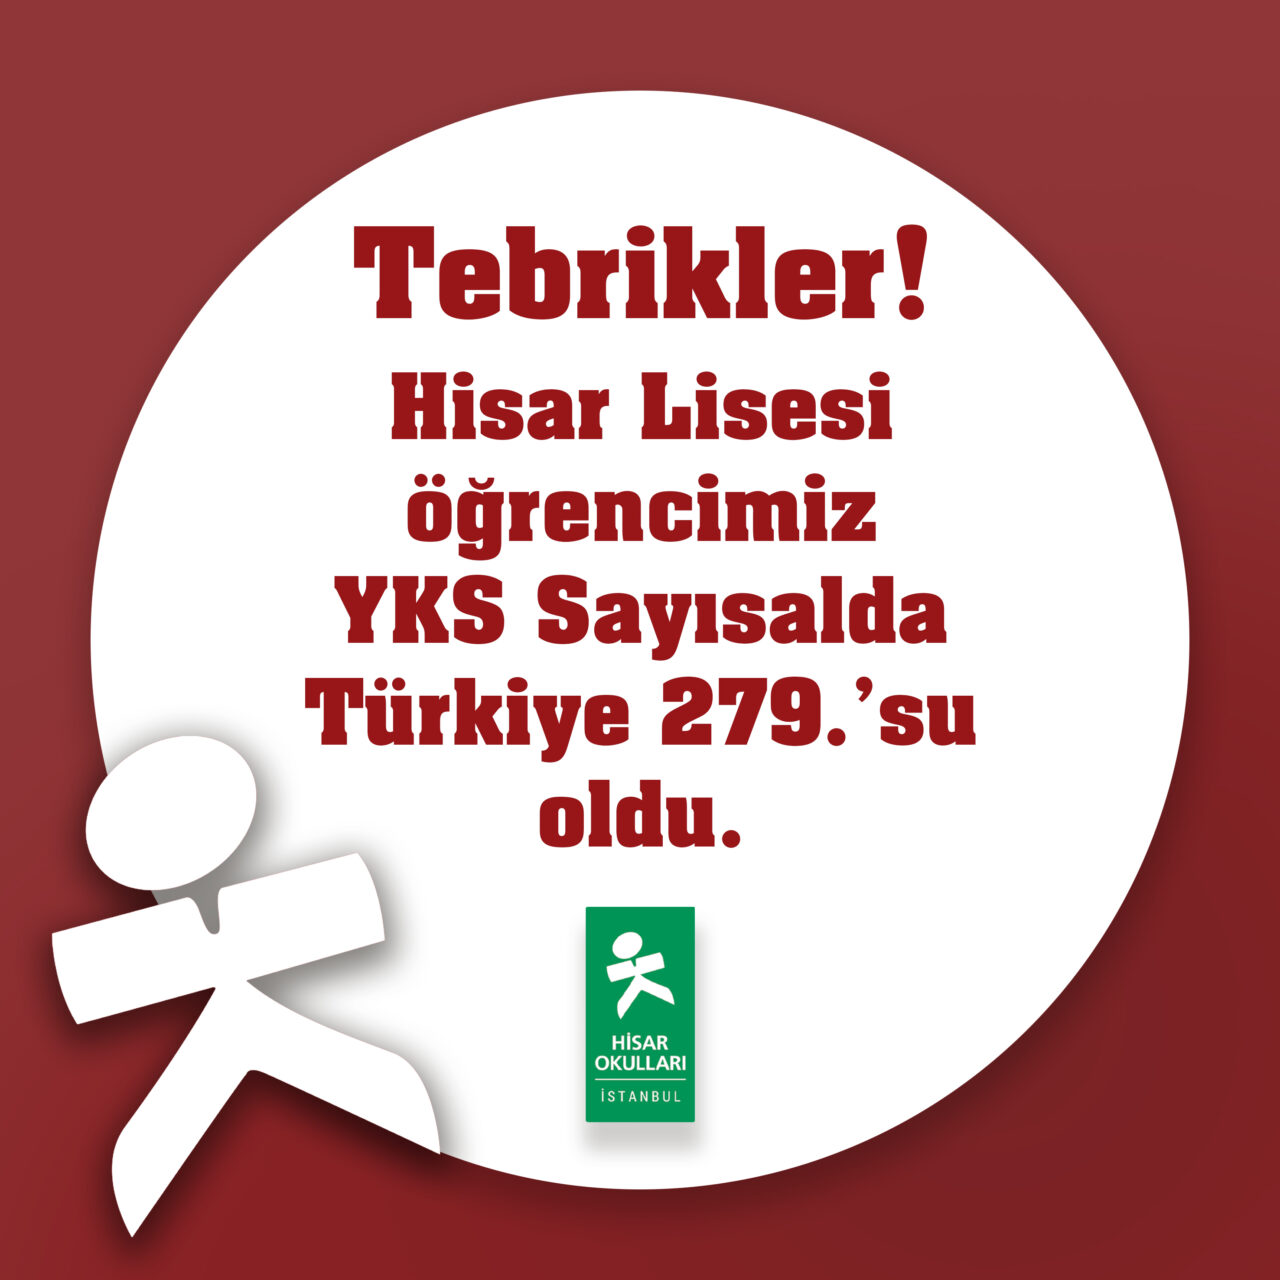 Öğrencimiz, YKS Sayısal Türkiye 279.’su Oldu